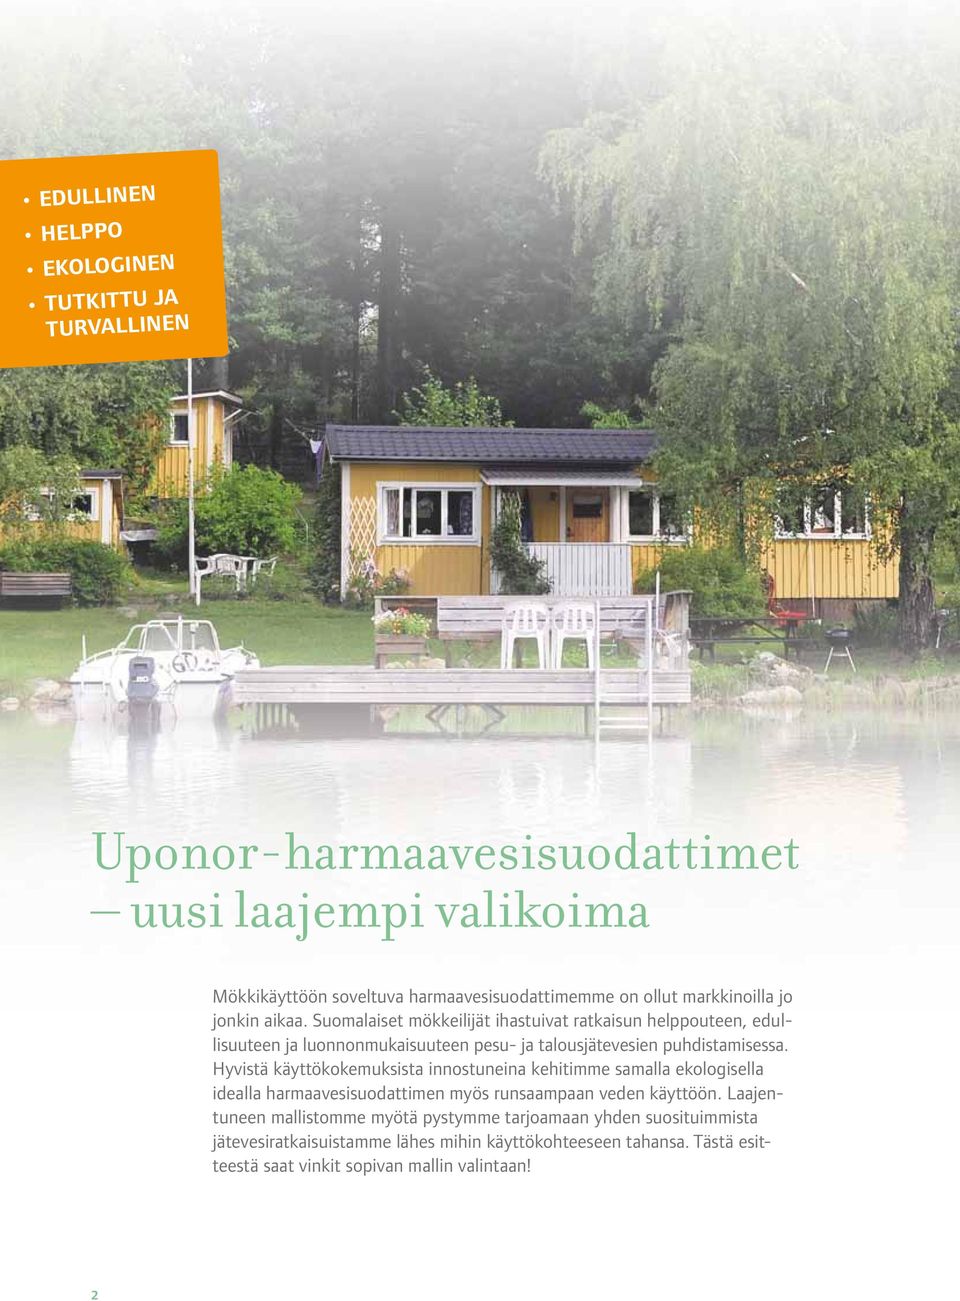 Suomalaiset mökkeilijät ihastuivat ratkaisun helppouteen, edullisuuteen ja luonnonmukaisuuteen pesu- ja talousjätevesien puhdistamisessa.